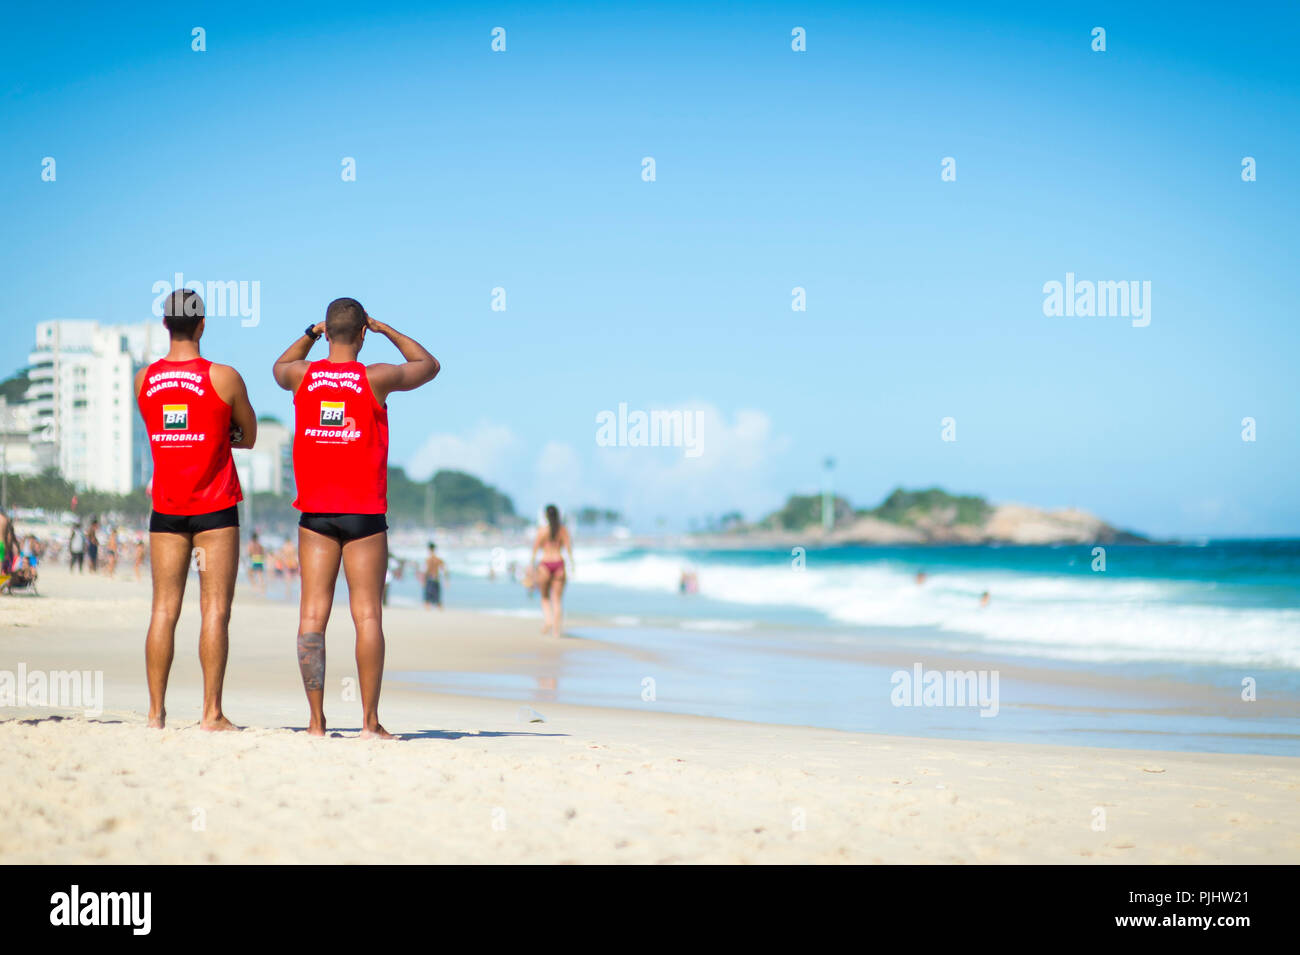 RIO DE JANEIRO - circa marzo, 2018: Coppia atletico di vita delle guardie in uniforme guarda la pesante surf sulla spiaggia di Ipanema Foto Stock